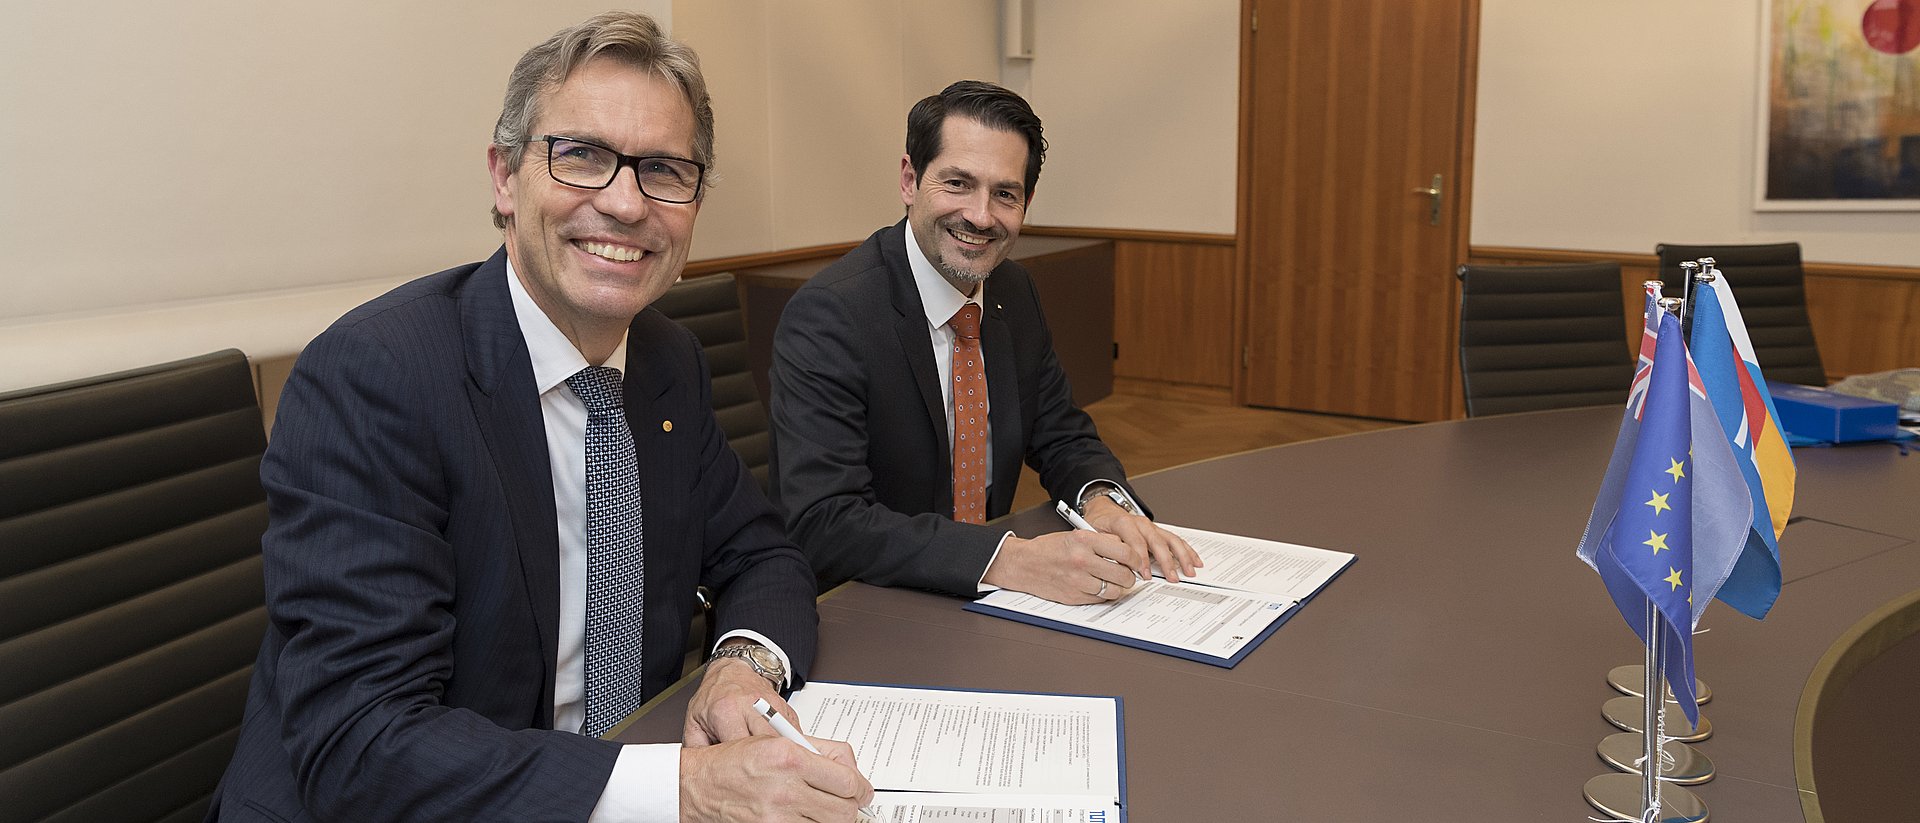 Die Präsidenten Prof. Peter Høj (l.) und Prof. Thomas F. Hofmann unterzeichnen das Kooperationsabkommen.